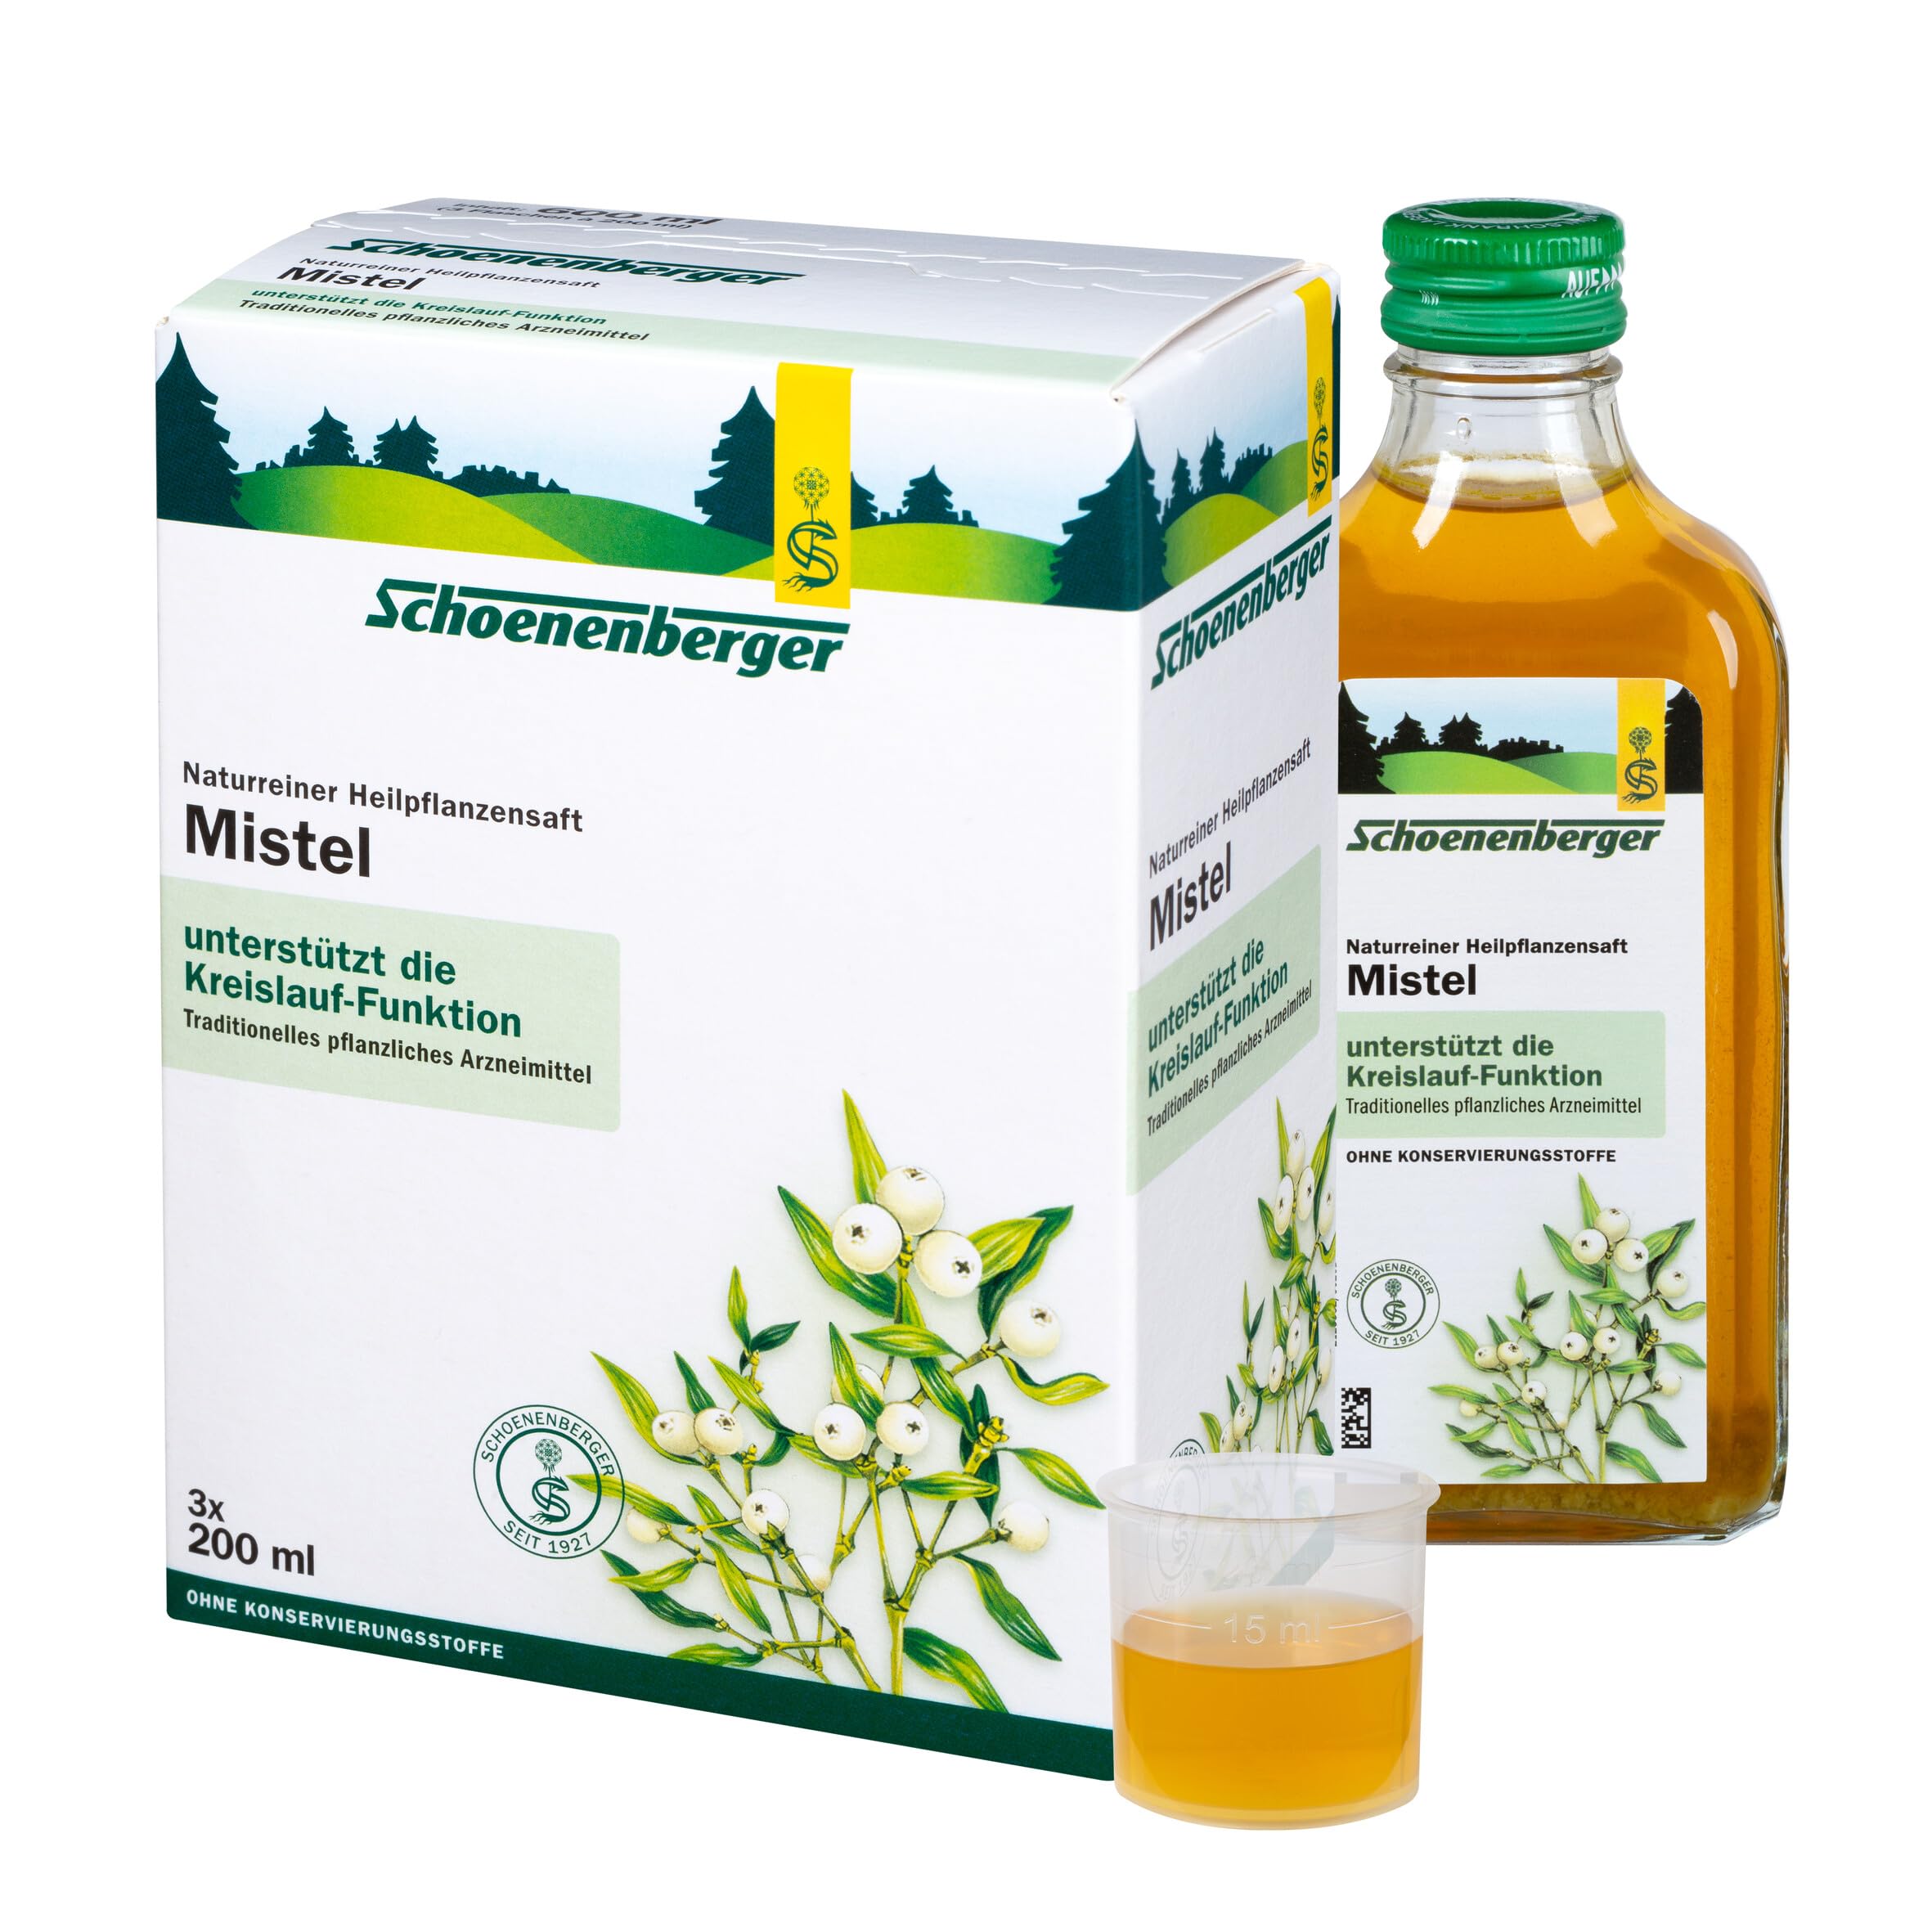 Schoenenberger - Mistel naturreiner Heilpflanzensaft - 3x 200 ml (600 ml) Glasflaschen - freiverkäufliches Arzneimittel - unterstützt die Kreislauffunktion